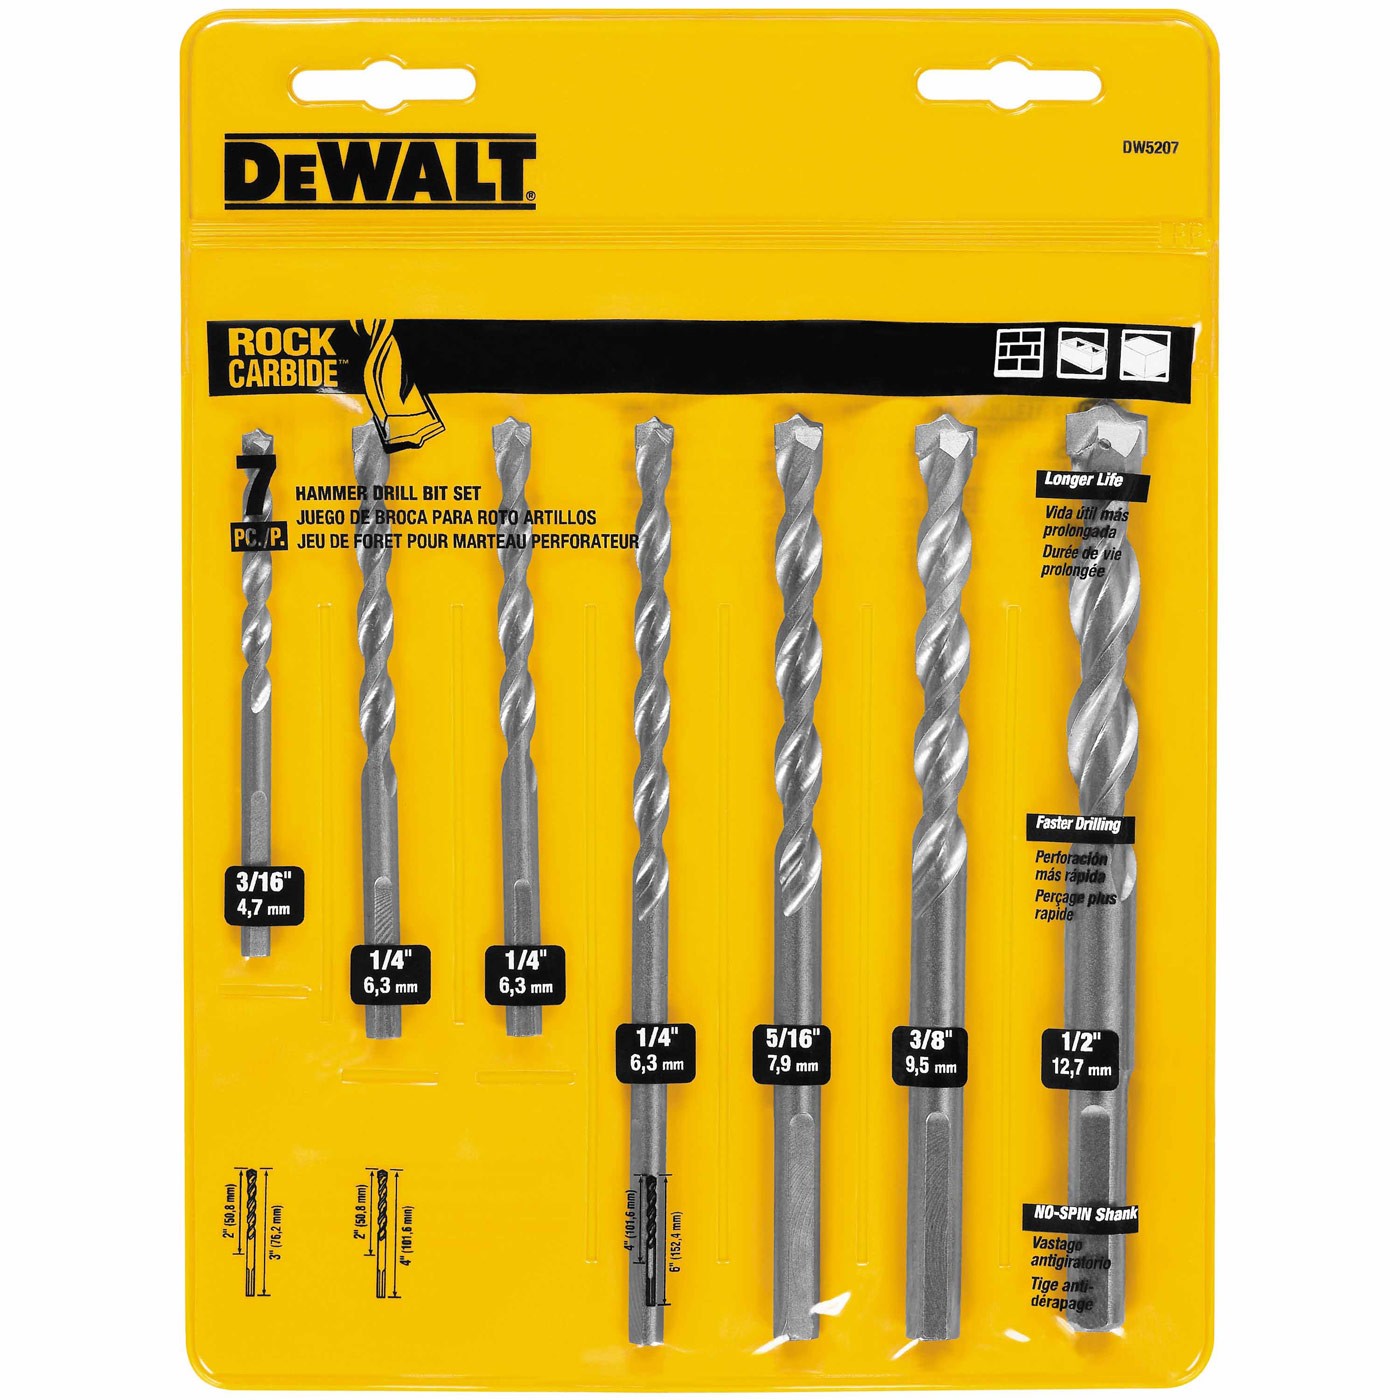 DeWalt DW5207 7 Piece Carbide Hammer Bit Set